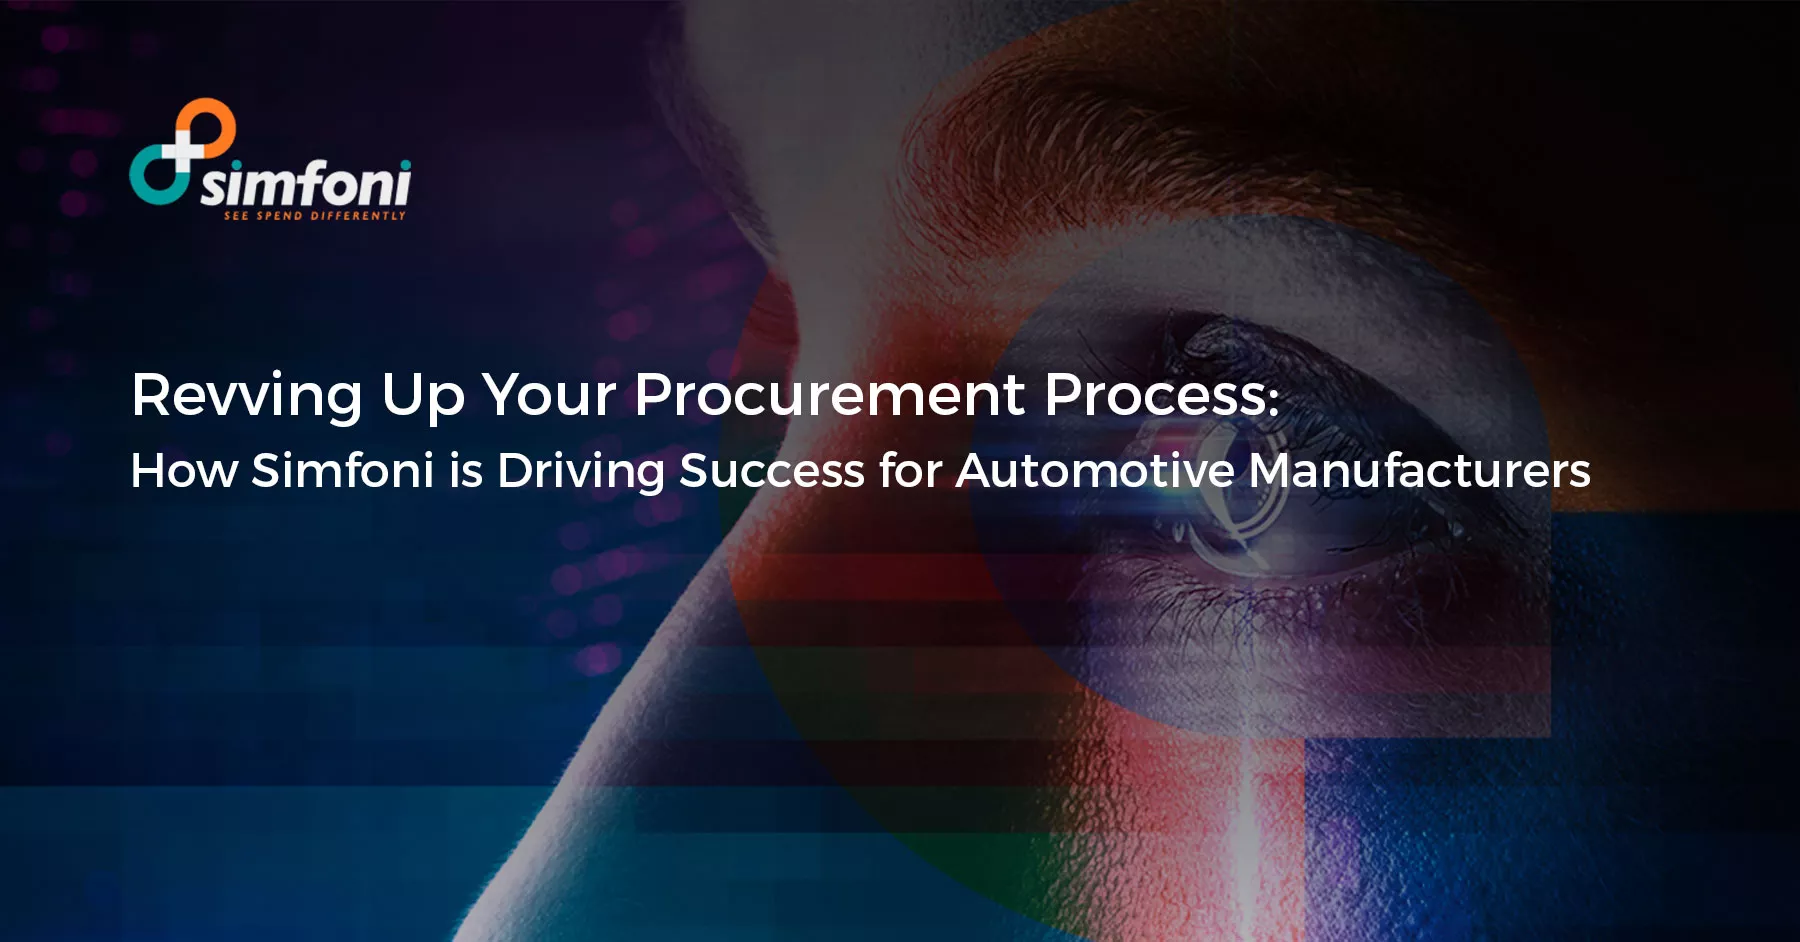 Procurement Process for Automotive Manufacturers